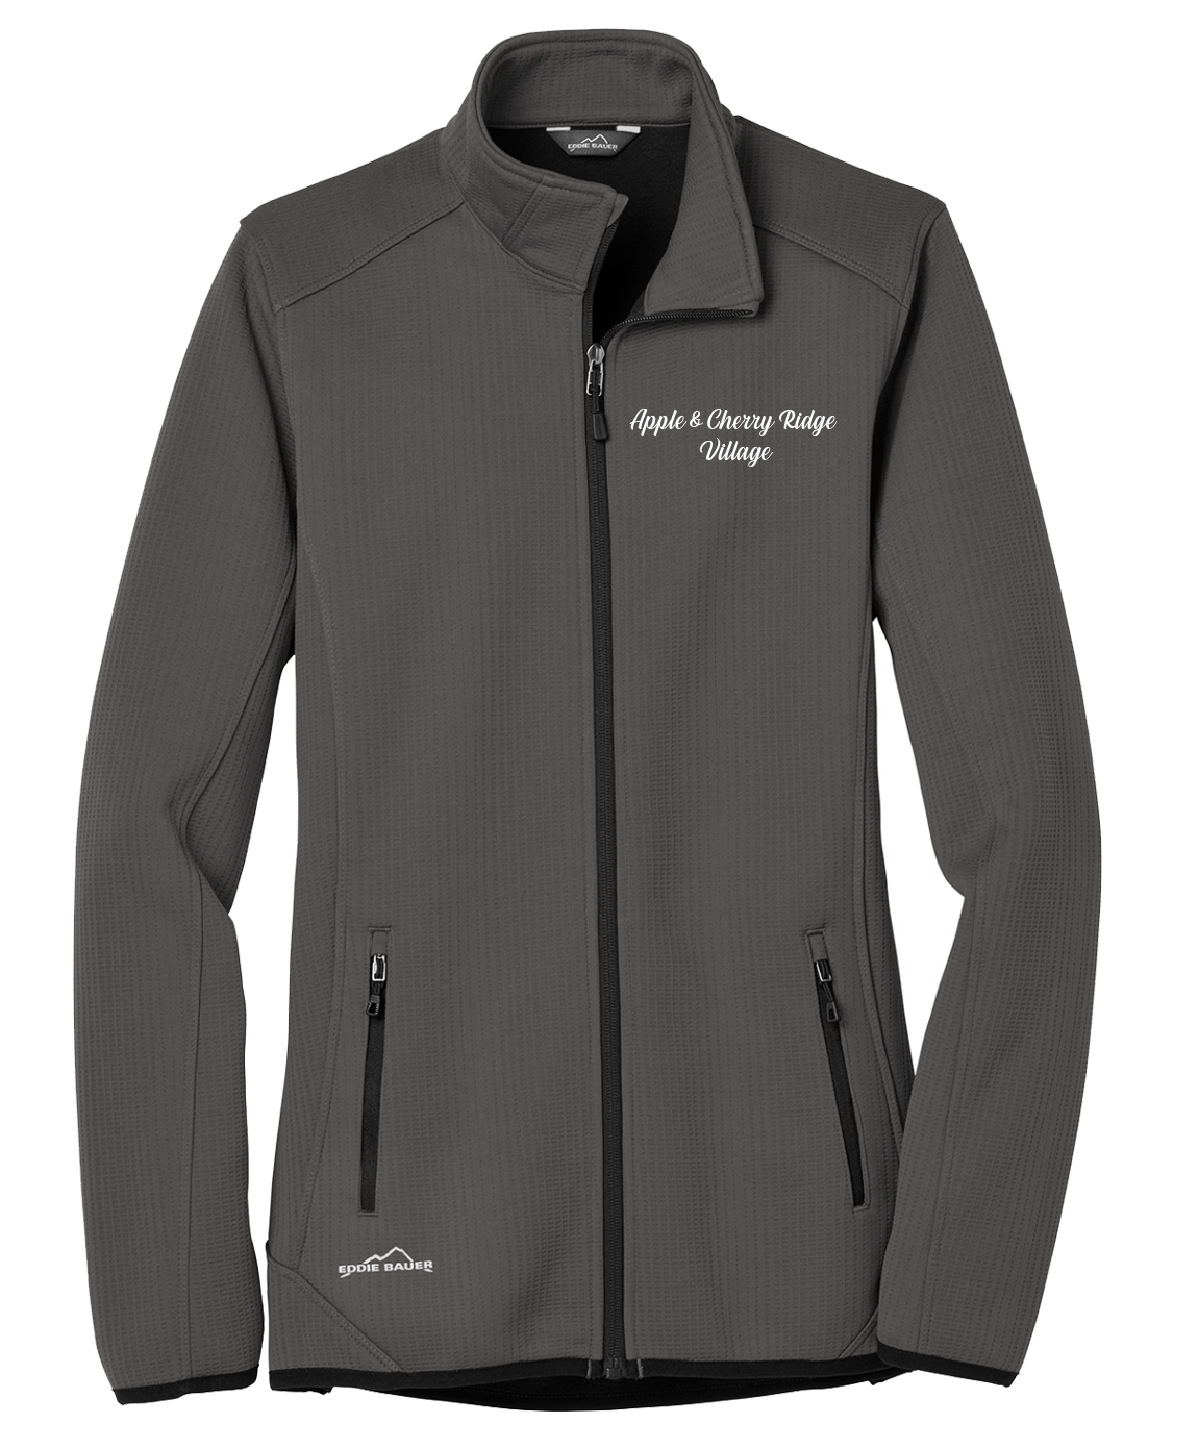 Apple & Cherry Ridge Village  - Ladies - Eddie Bauer ® Dash Full-Zip Fleece Jacket